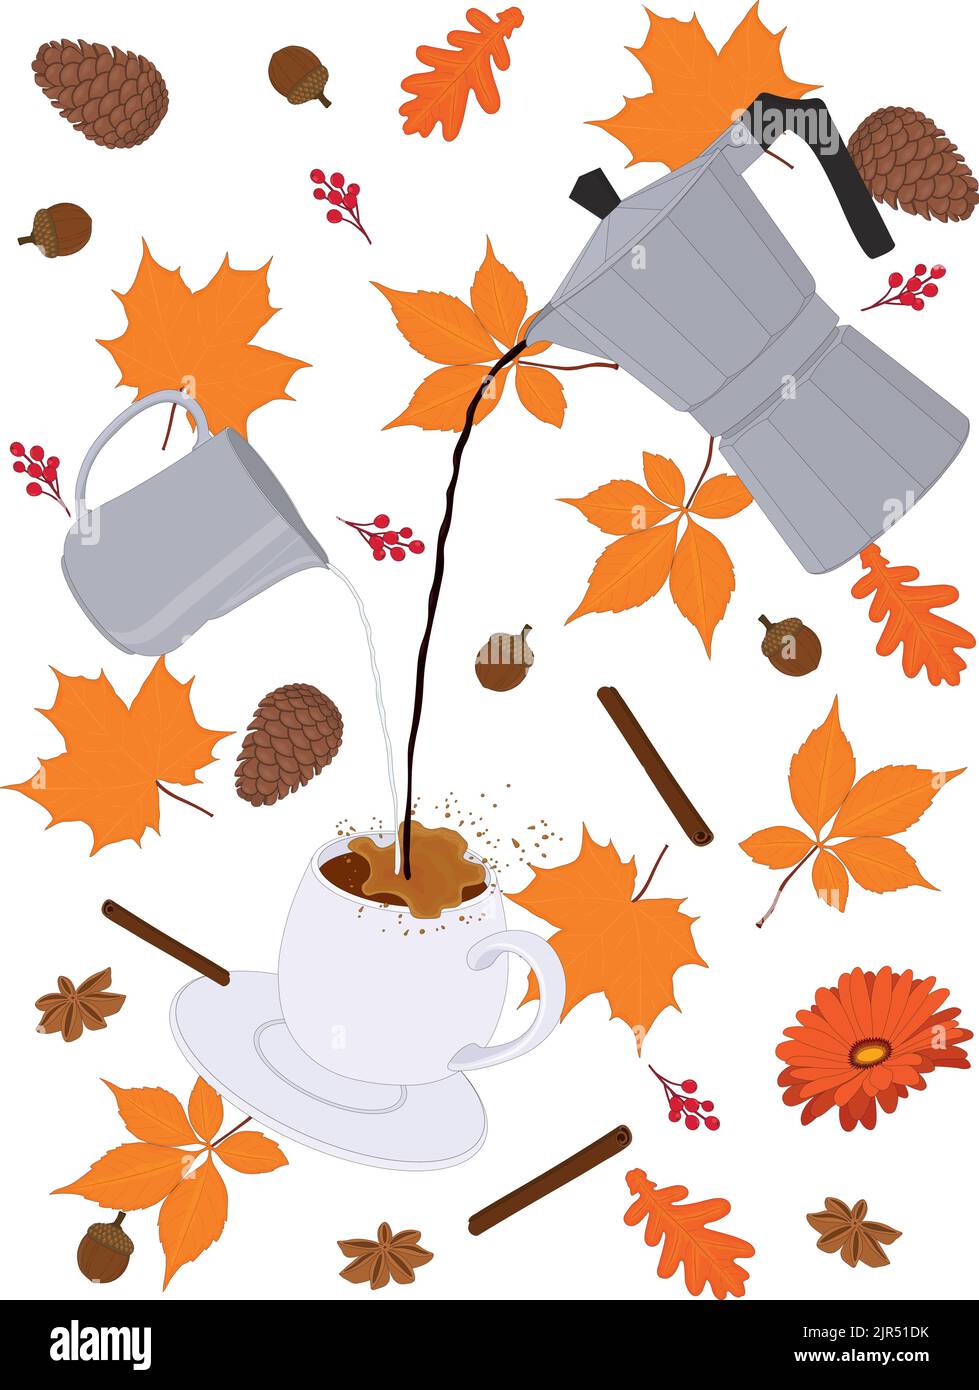 Tasse de café spéciale sur le thème de l'automne en mouvement avec des pots de café et de lait entourés d'une illustration vectorielle de feuilles de couleur orange Illustration de Vecteur